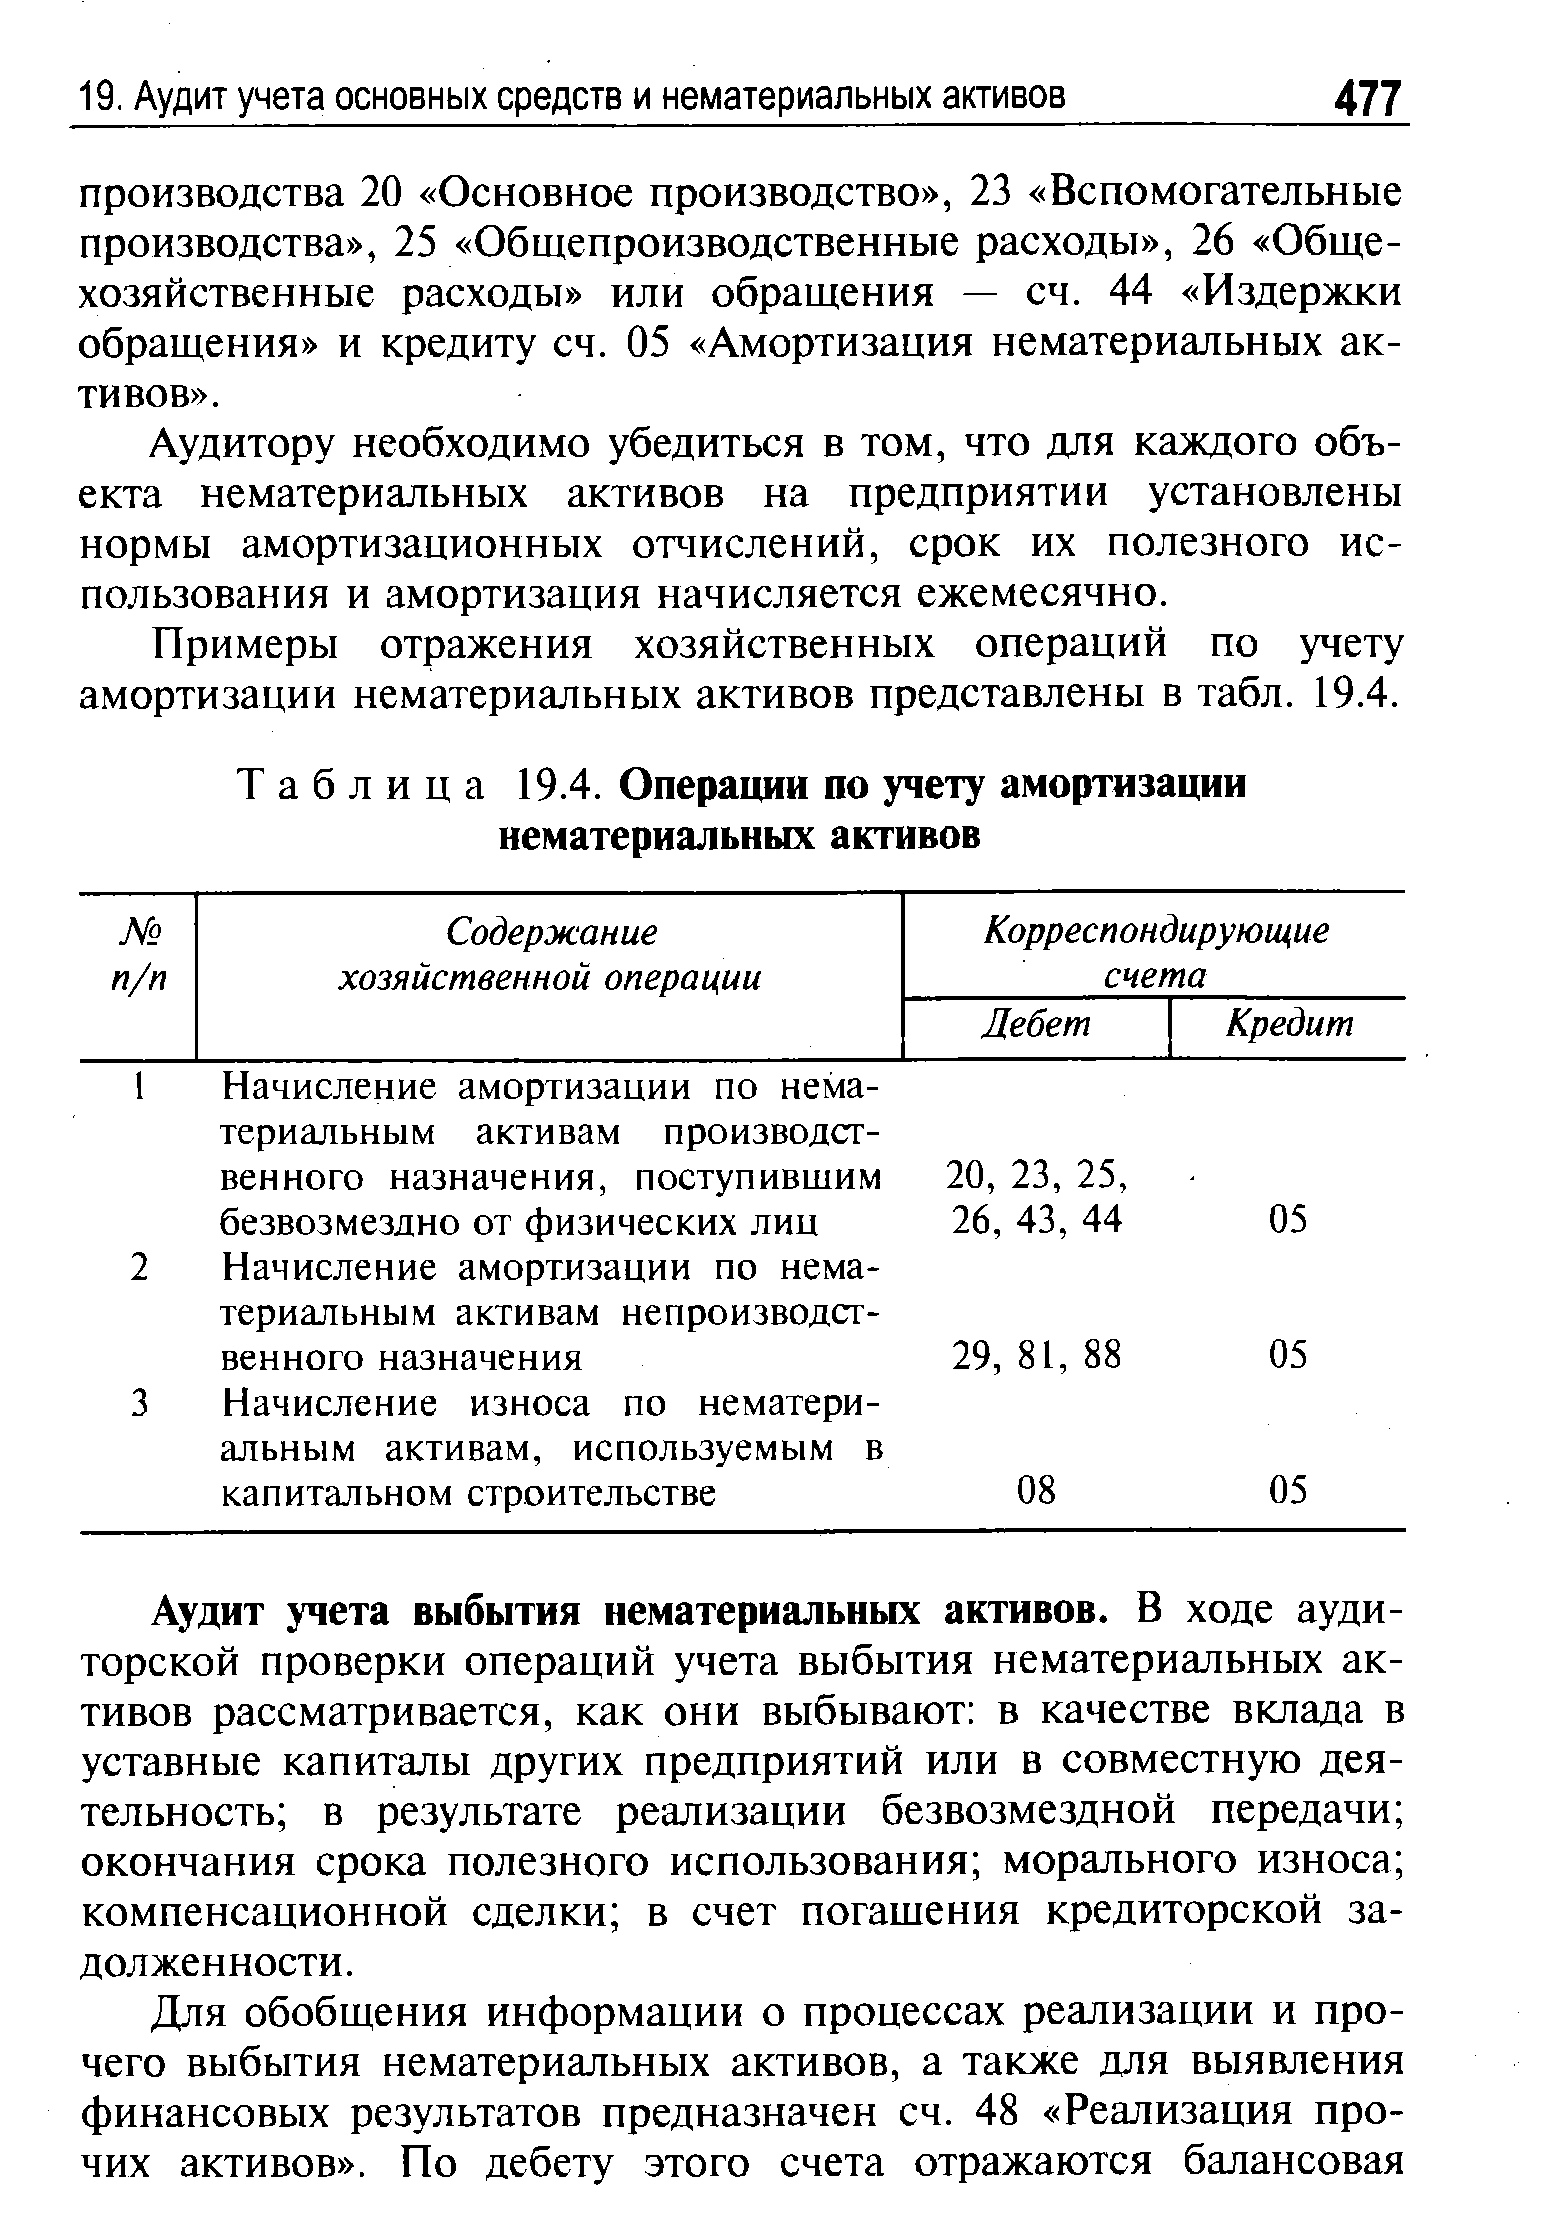 Таблица 19.4. Операции по учету амортизации нематериальных активов